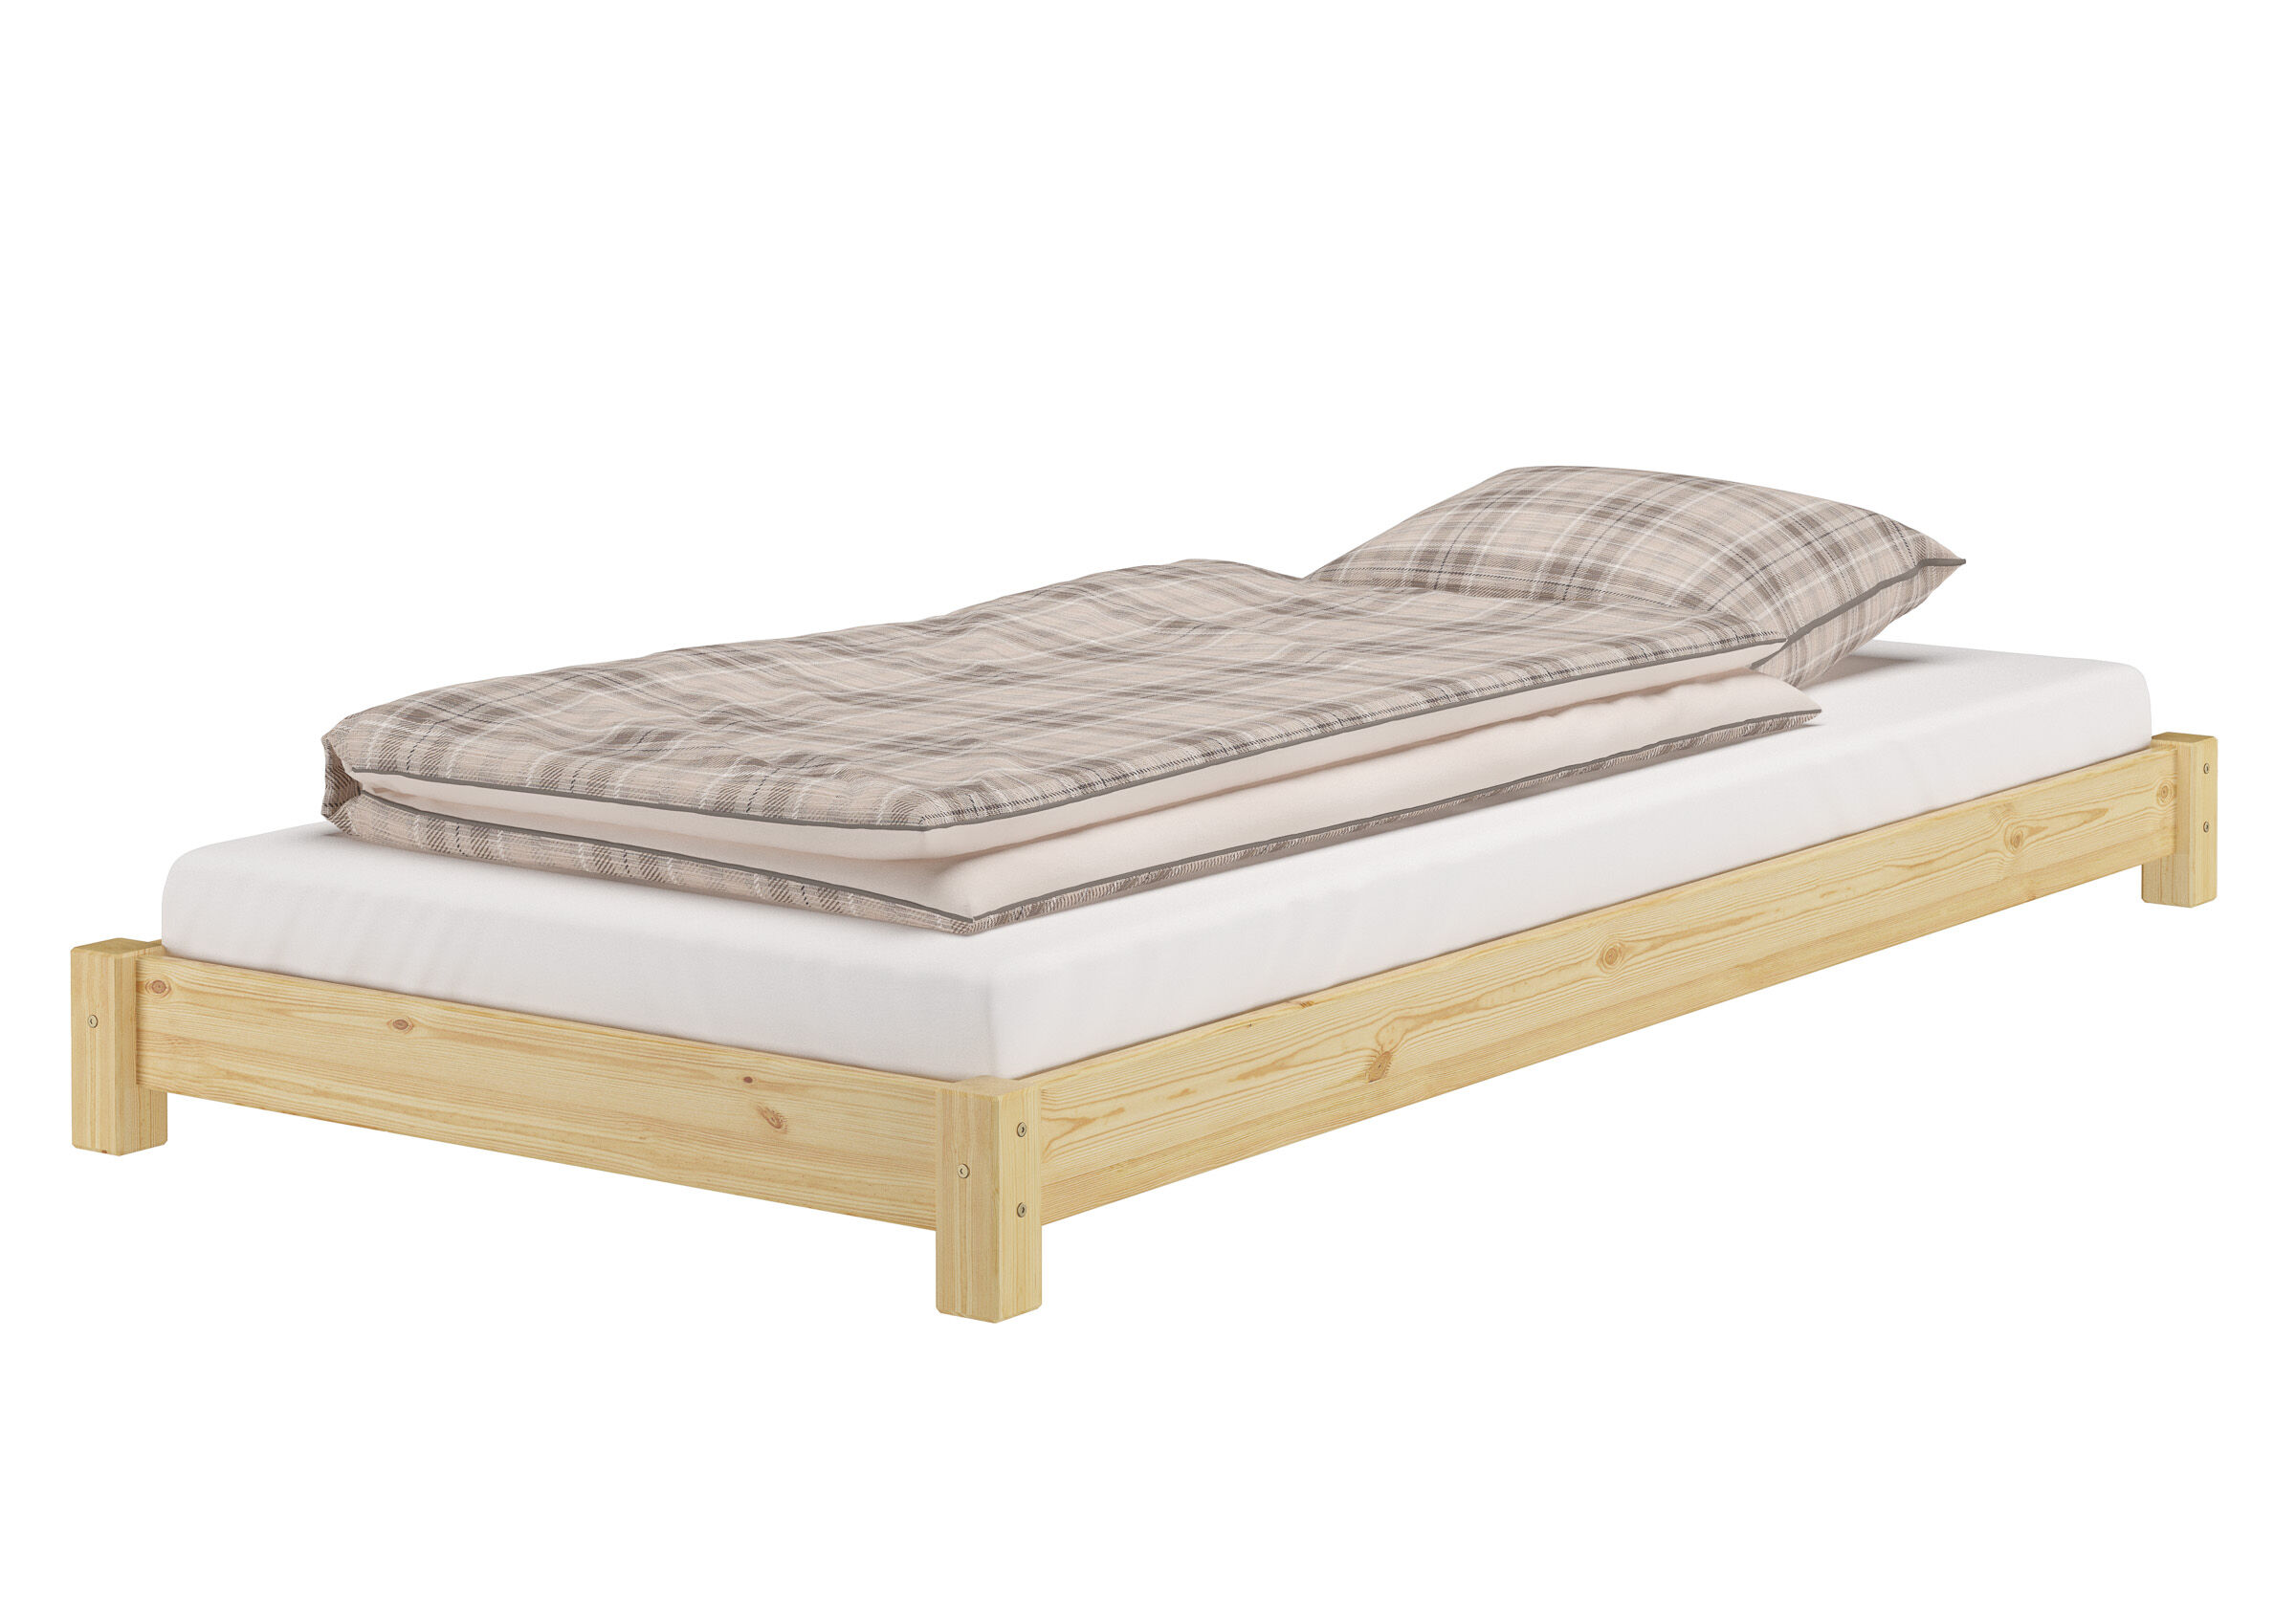 Tre varianti di letto singolo futon molto basso 80x200 in pino massello V-60.51-08